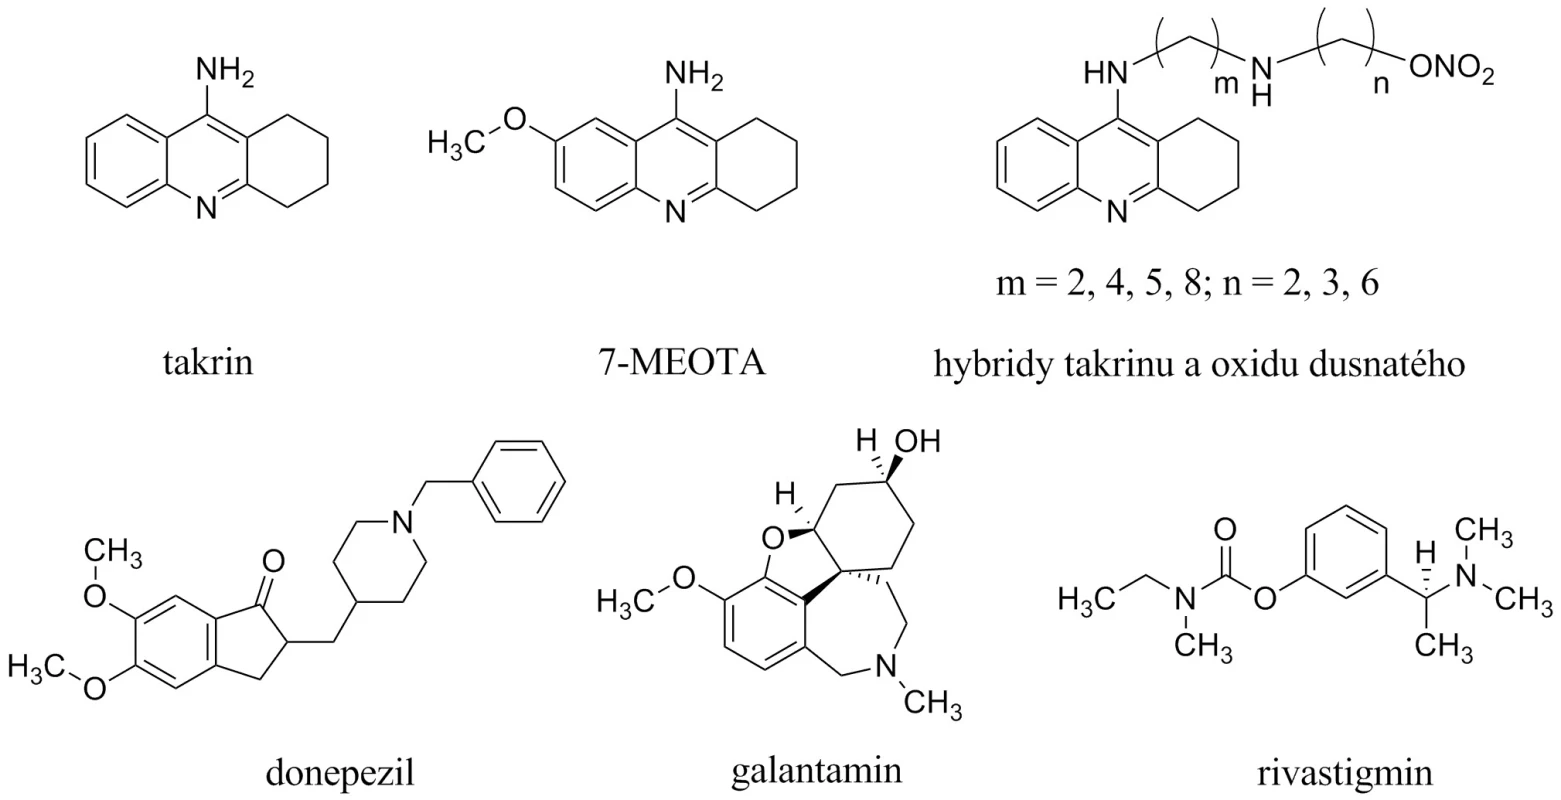 Struktury inhibitorů acetylcholinesterasy